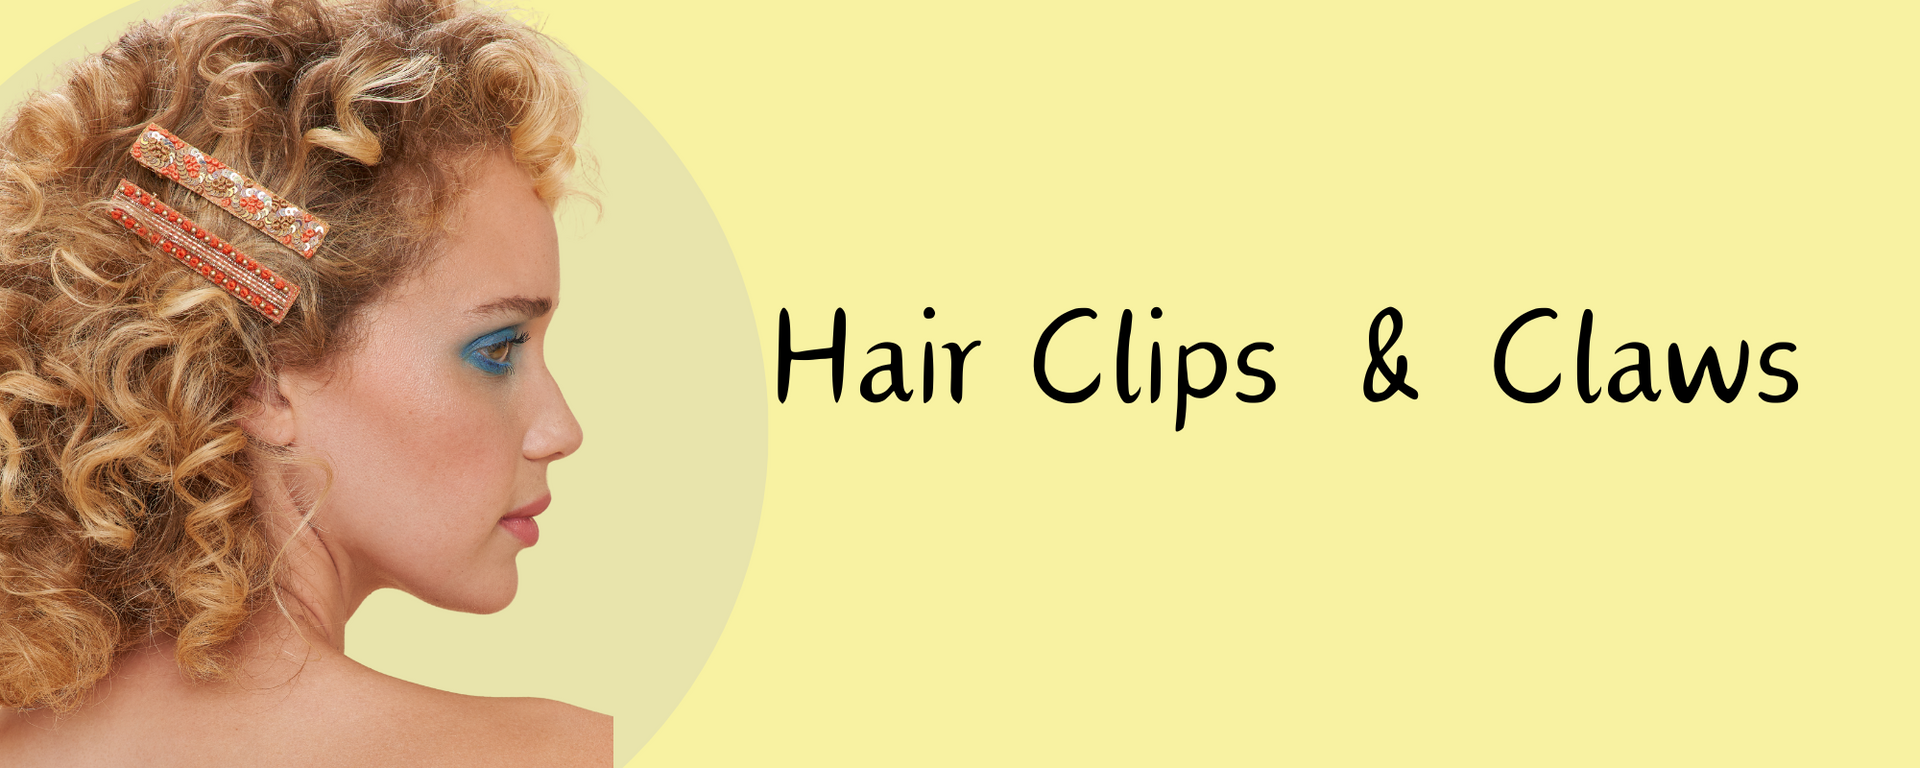 Hair Clips & Claws